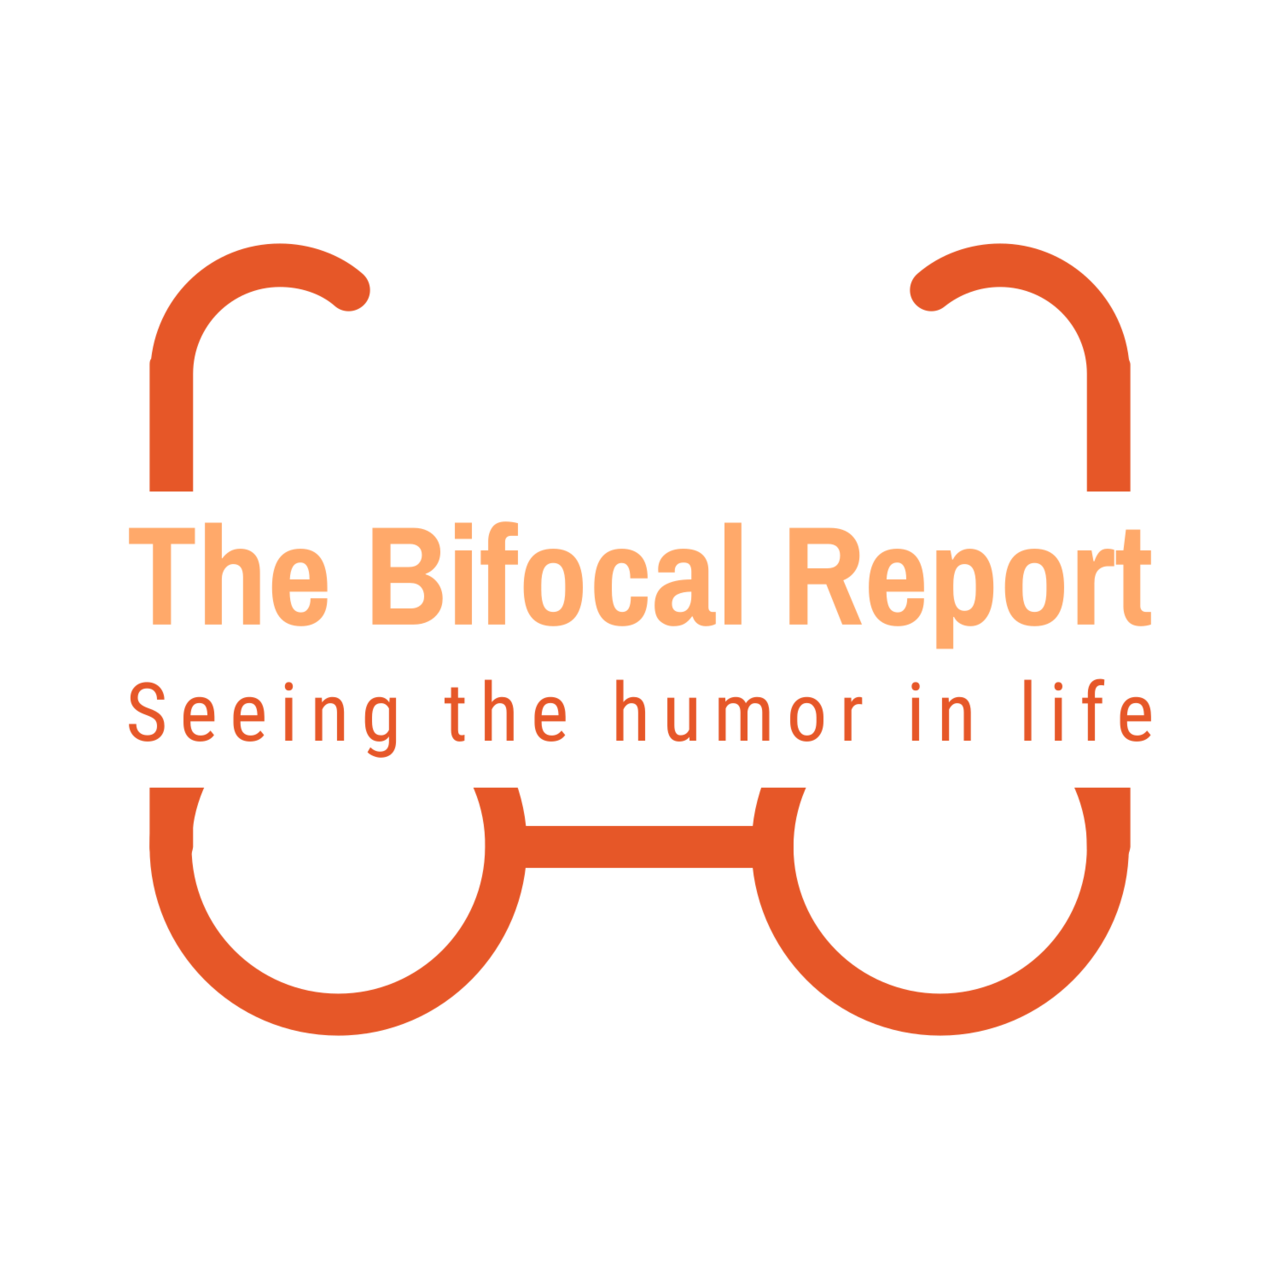 The Bifocal Report